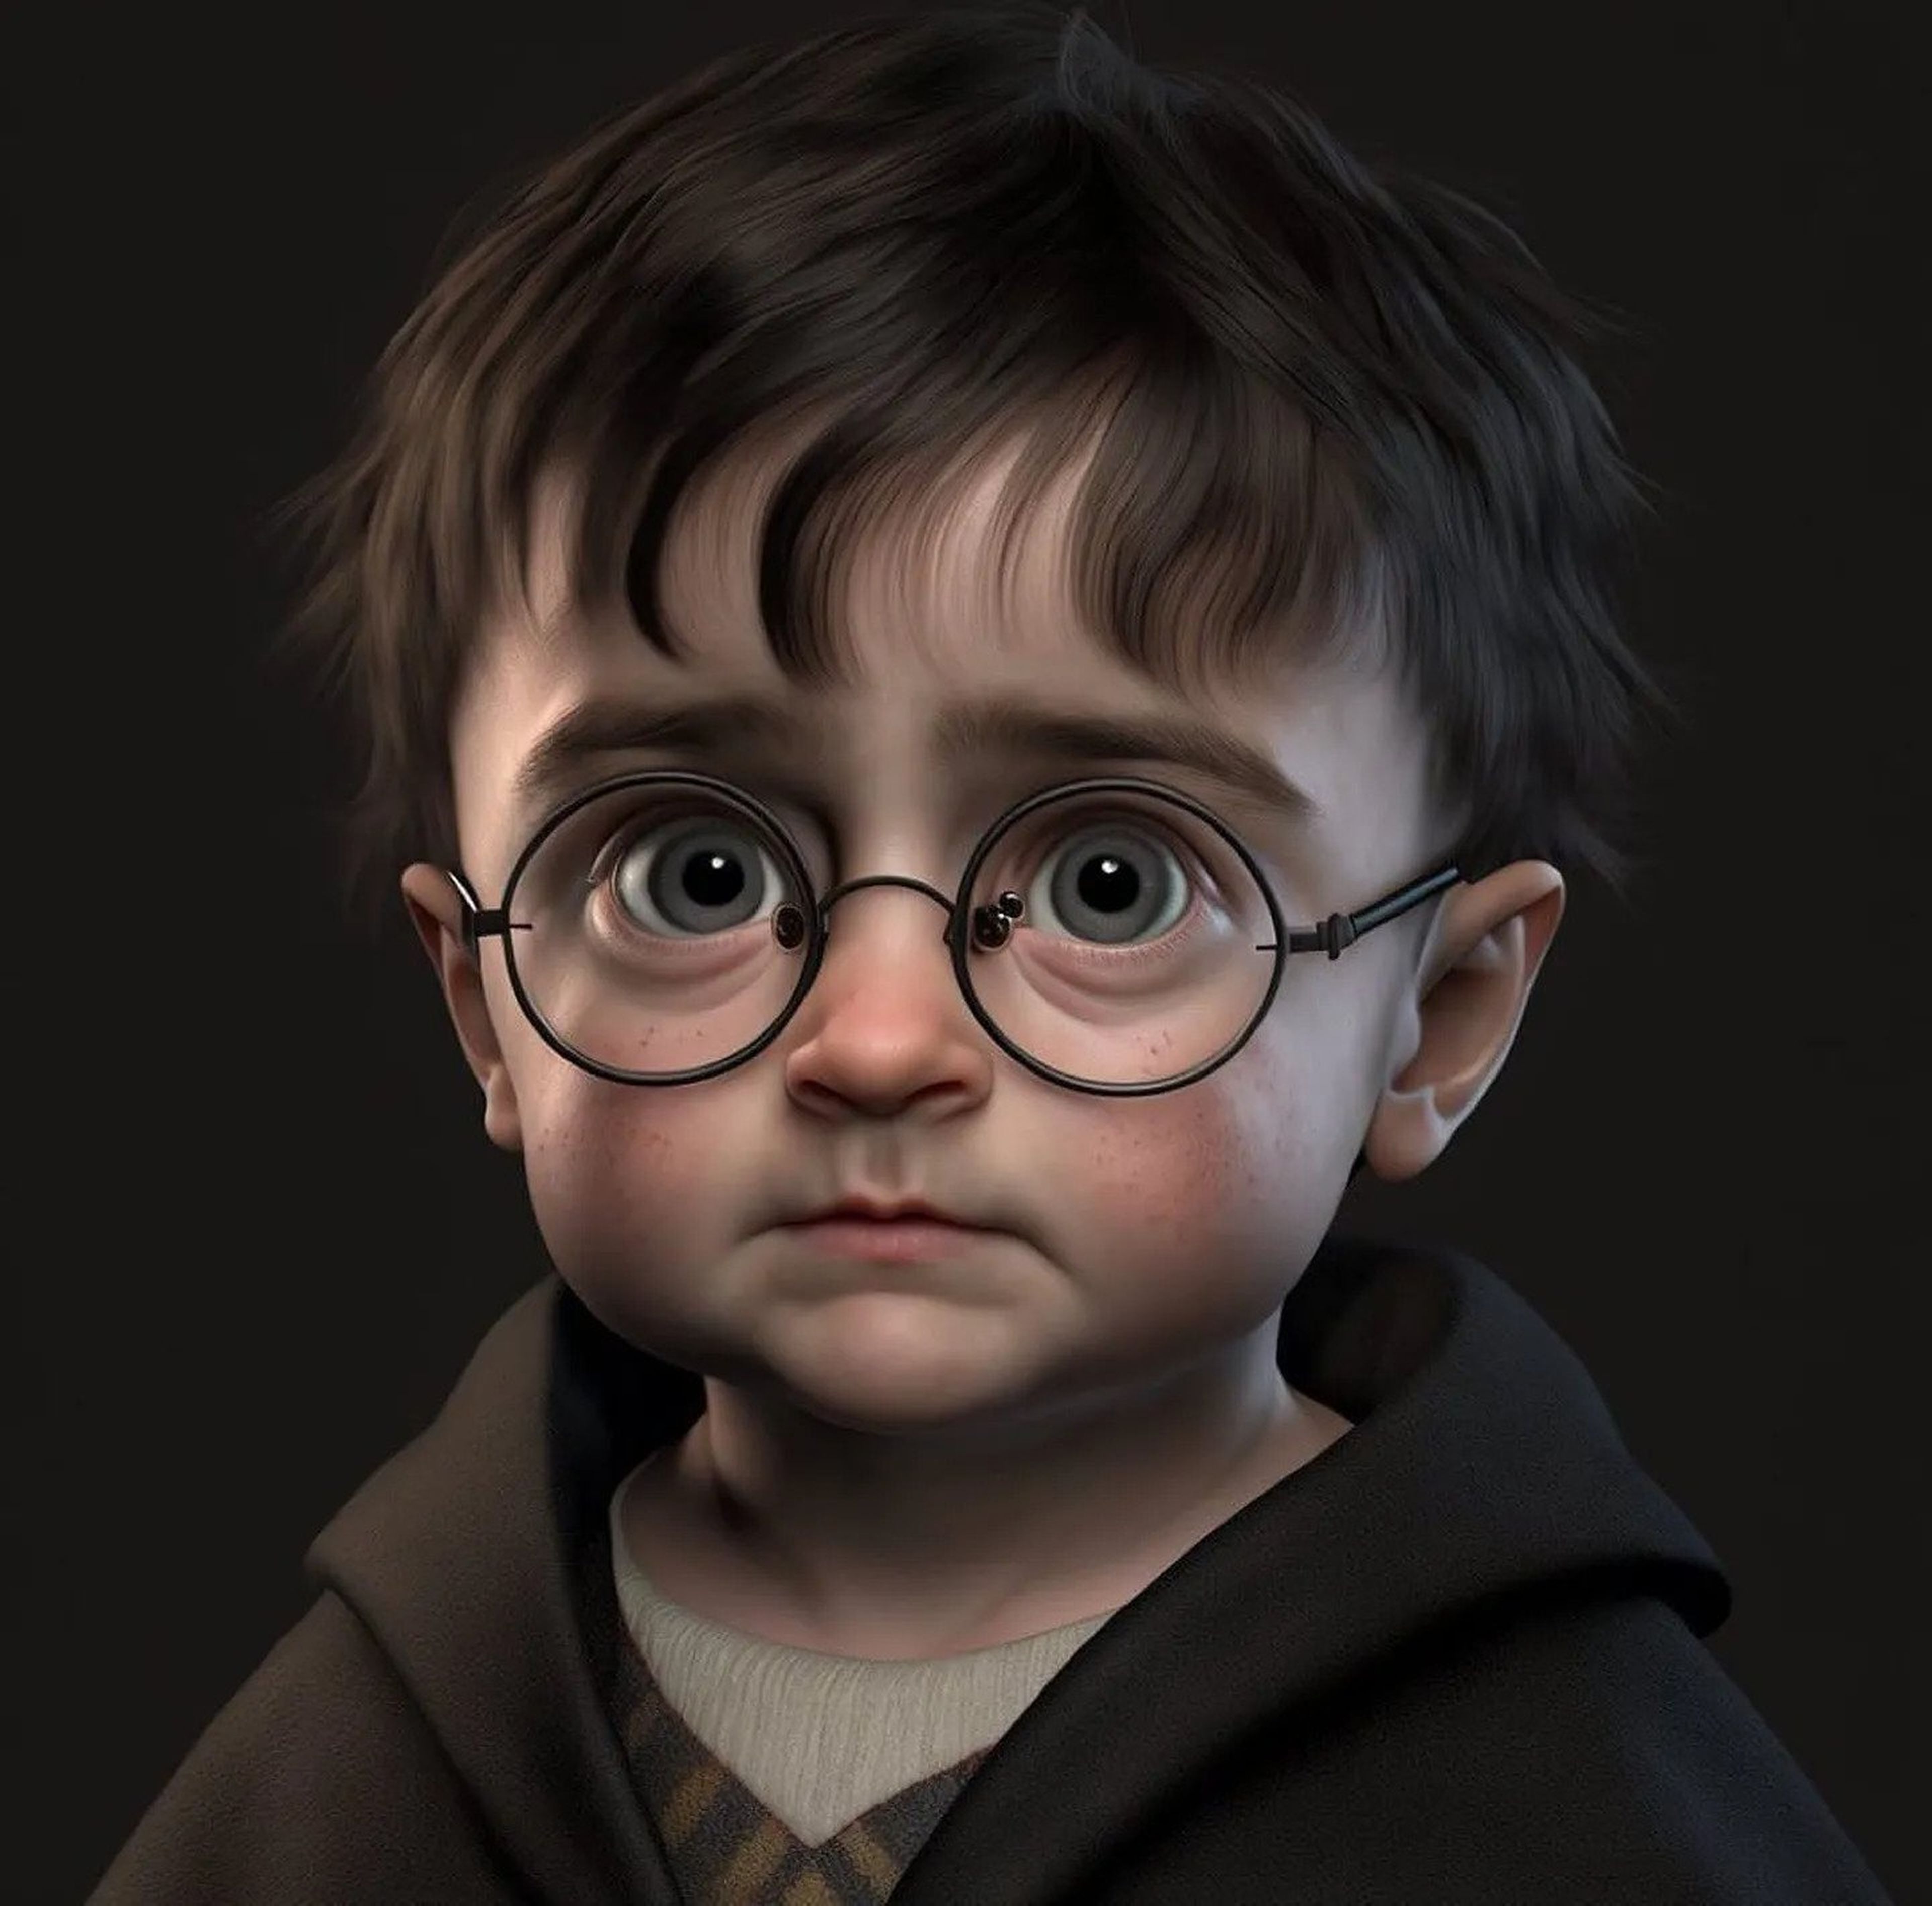 Los personajes de Harry Potter como si fueran bebés gracias a la Inteligencia Artificial